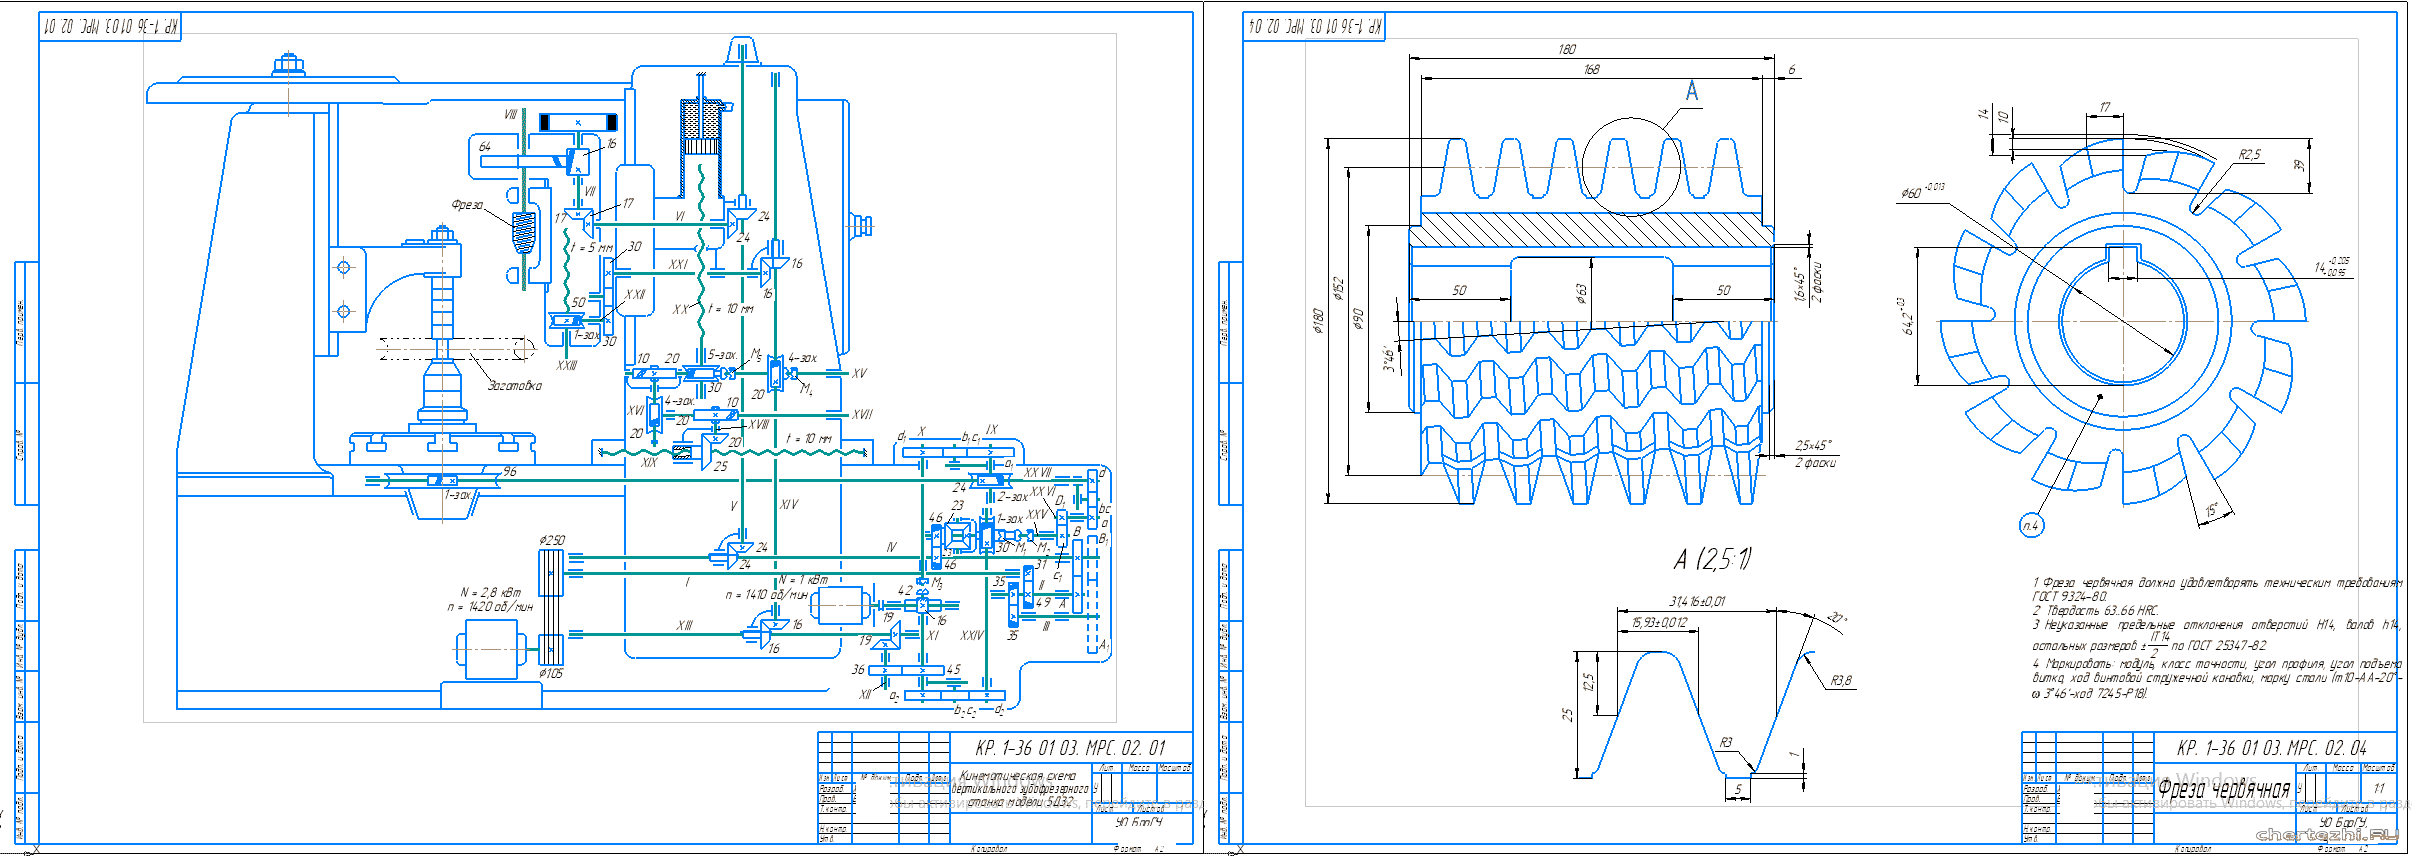 Курсовой проект - Разработка кинематической схемы зубофрезерного станка 5Д32 с проектированием режущего инструмента